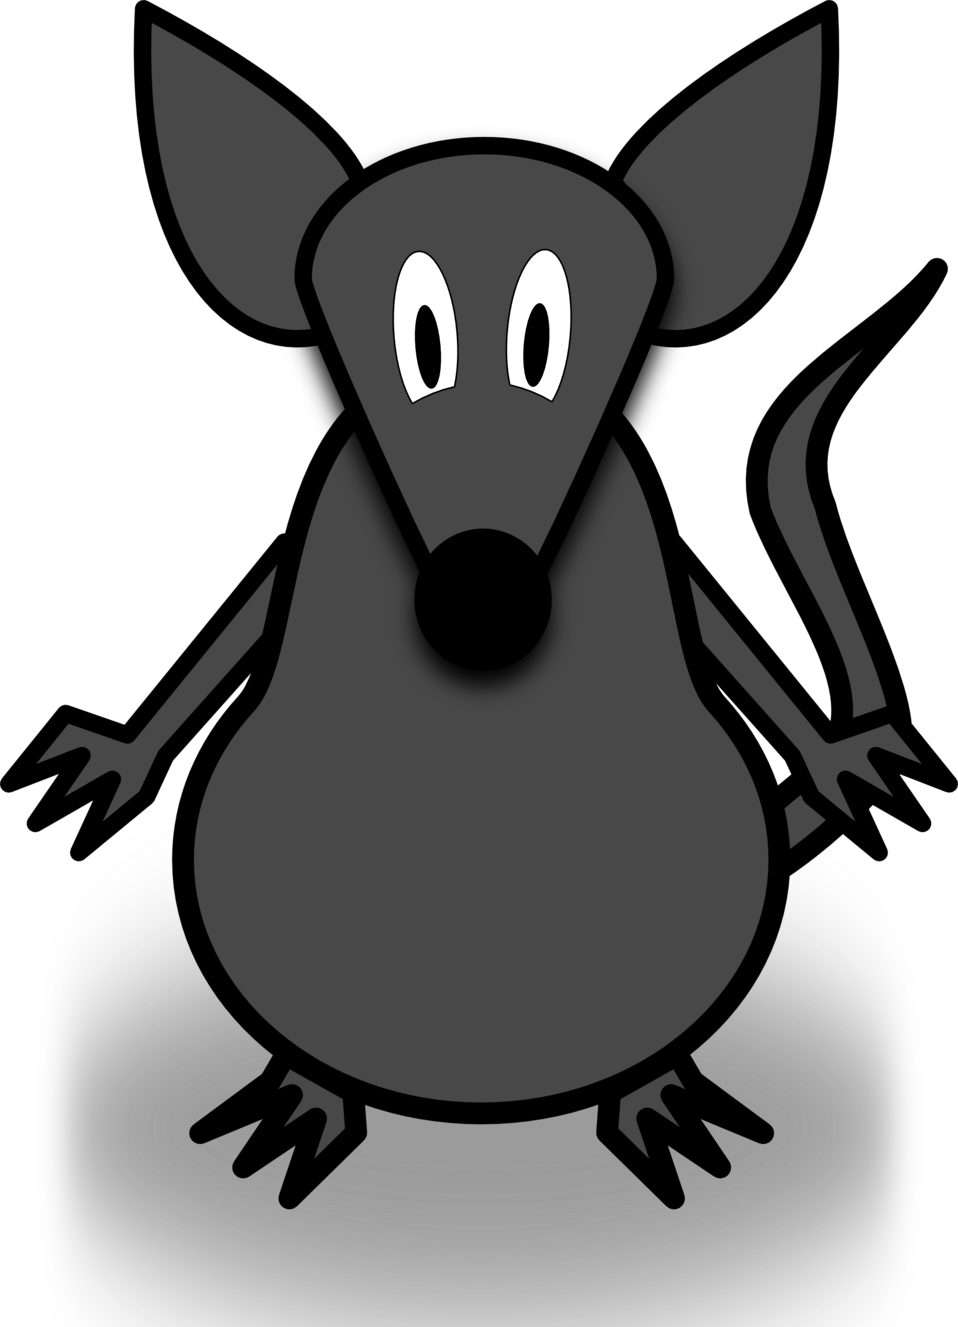 Rat public domain